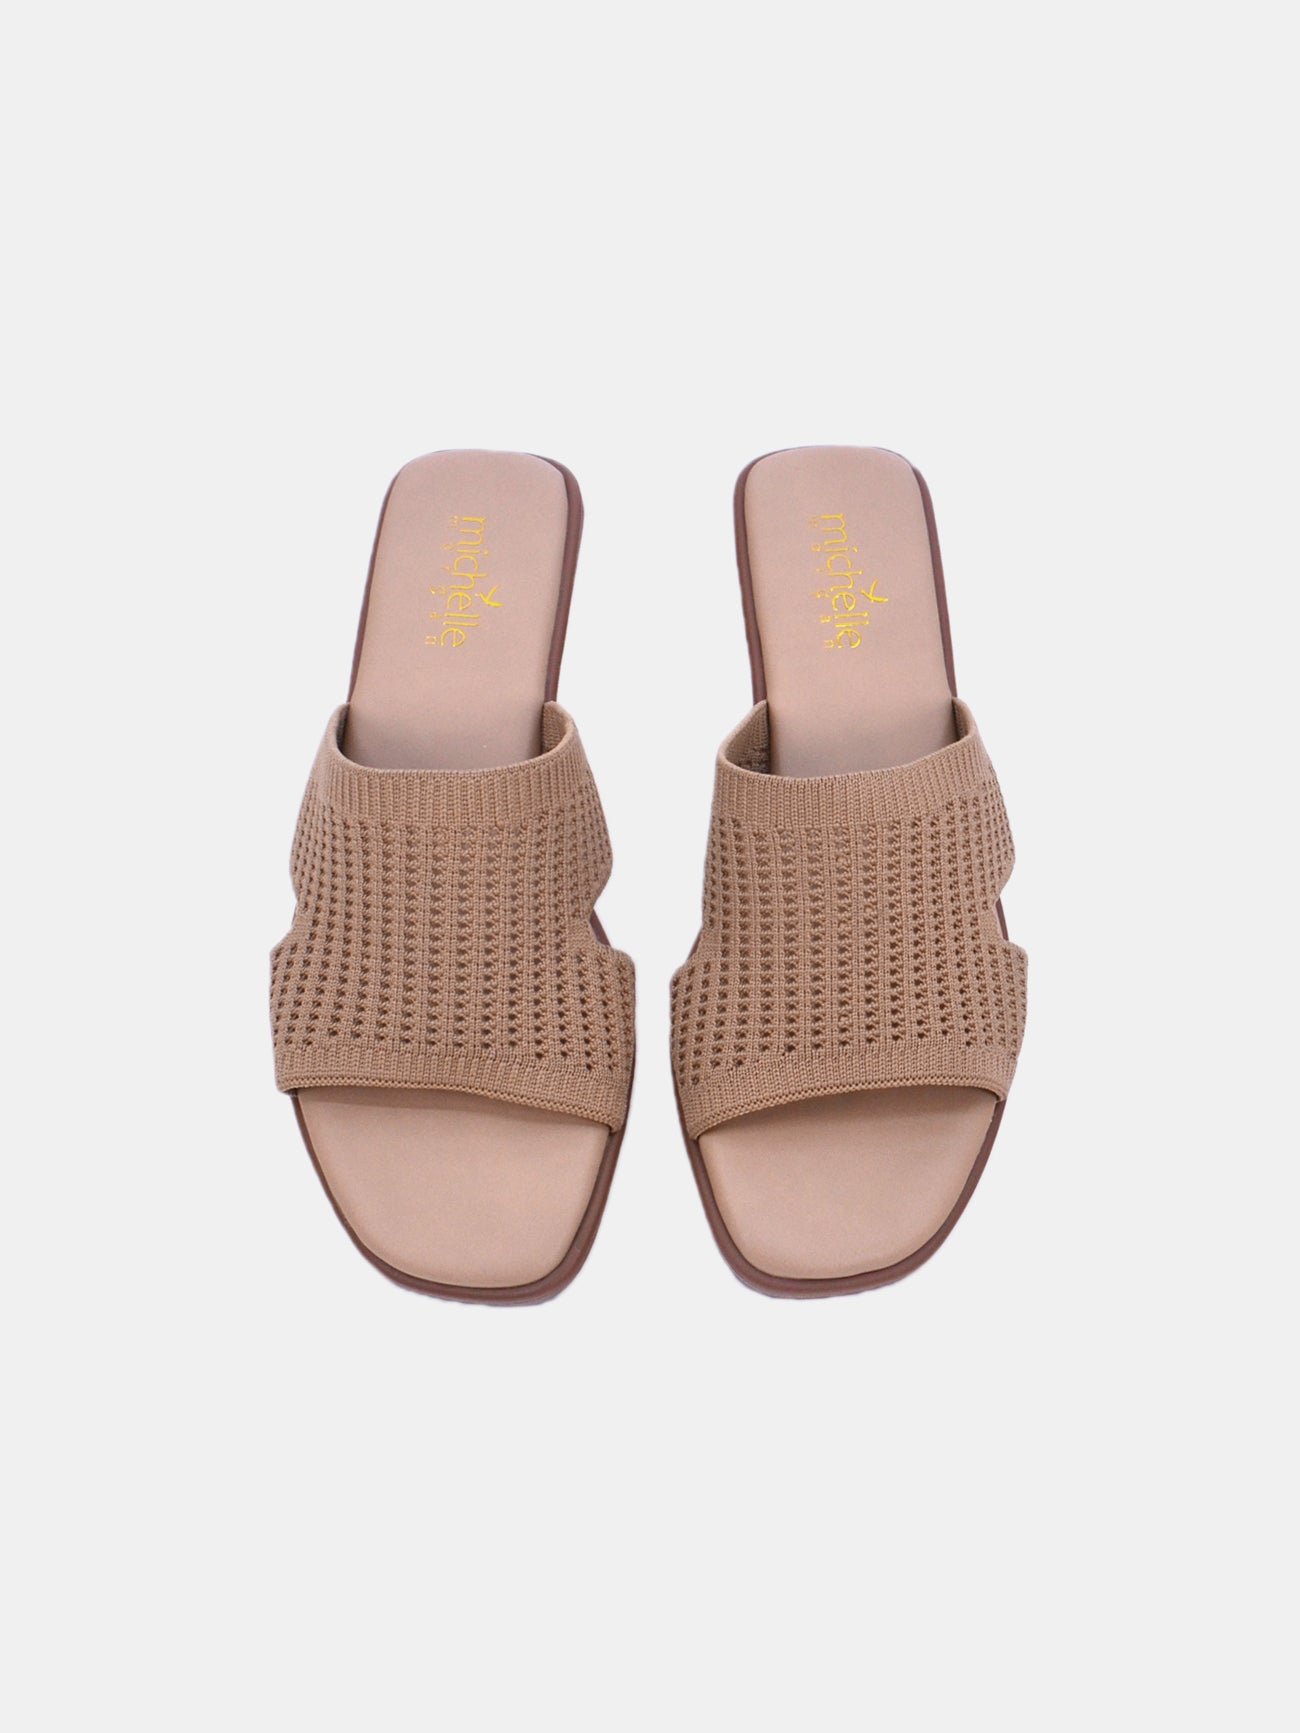 Michelle Morgan 114RJ10H Women's Flat Sandals #color_Beige